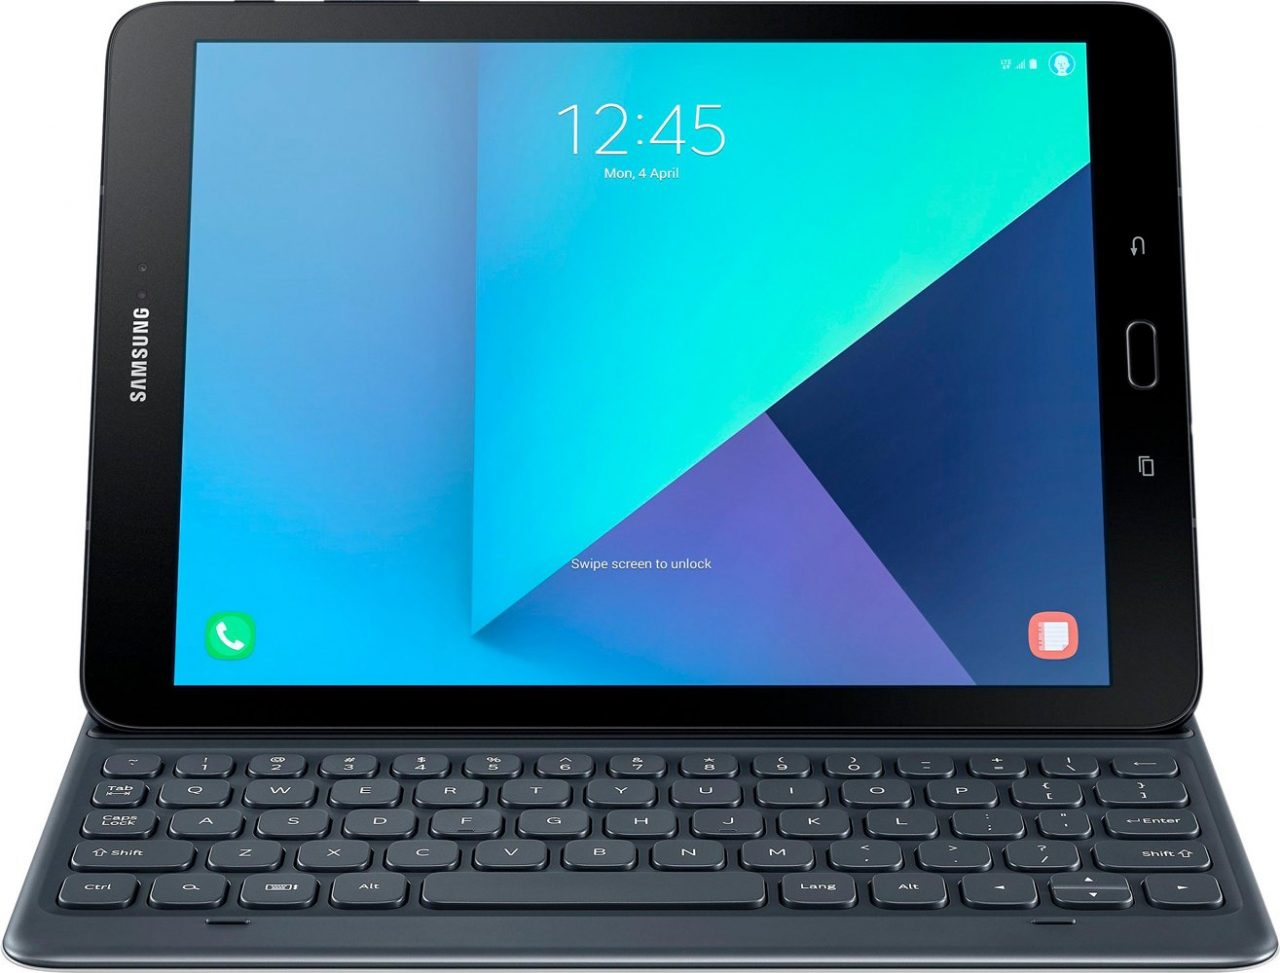 Samsung Galaxy Tab S3 avrà anche una tastiera: eccola!